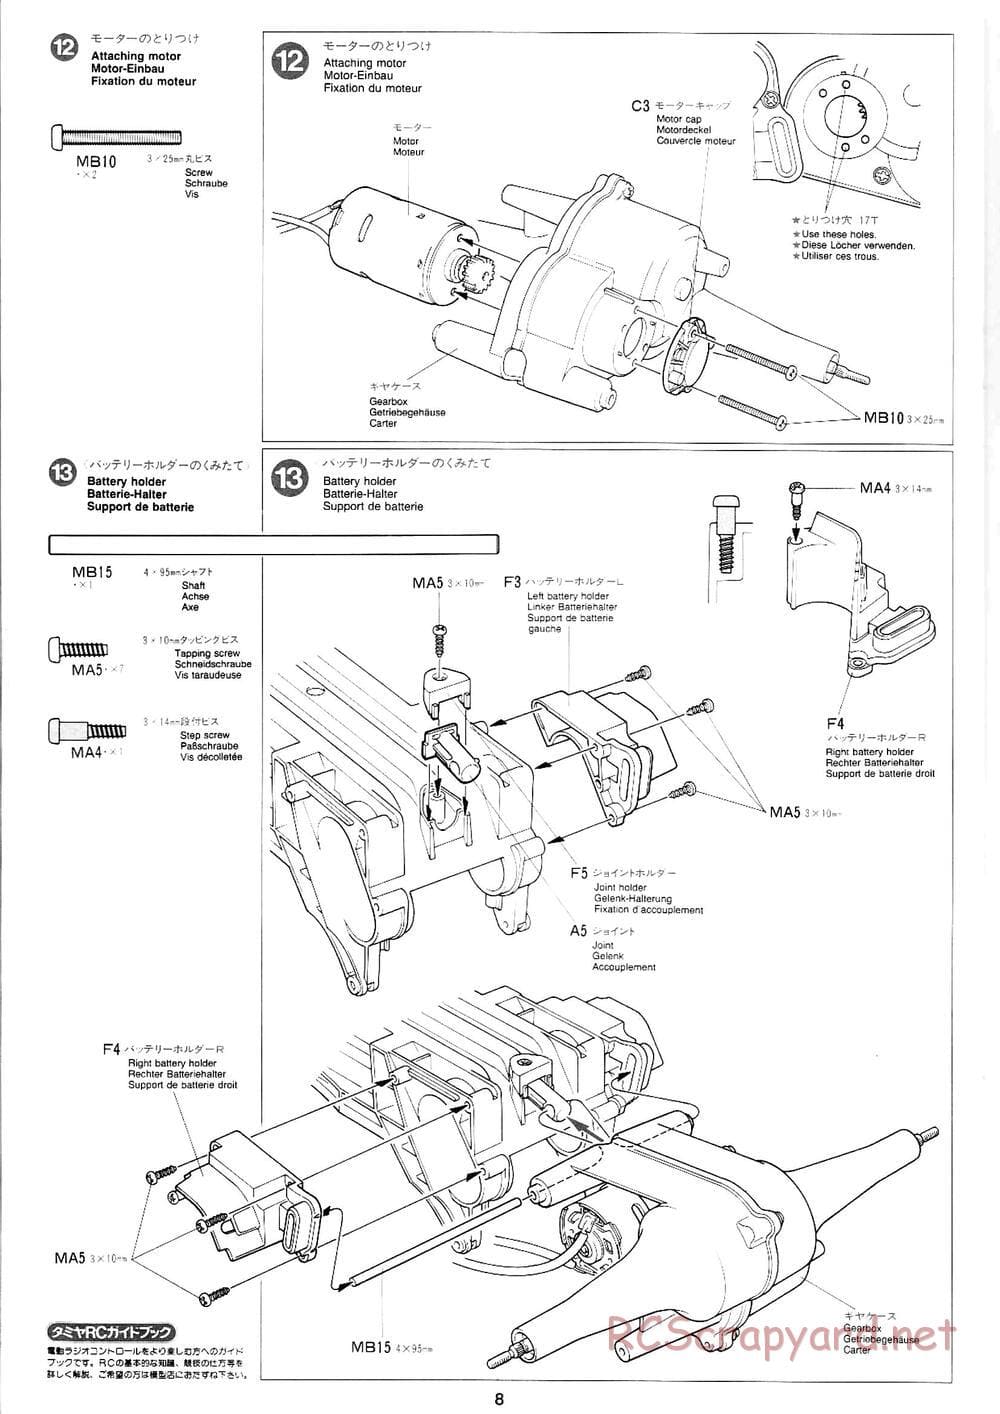 Tamiya - Mad Bull Chassis - Manual - Page 8